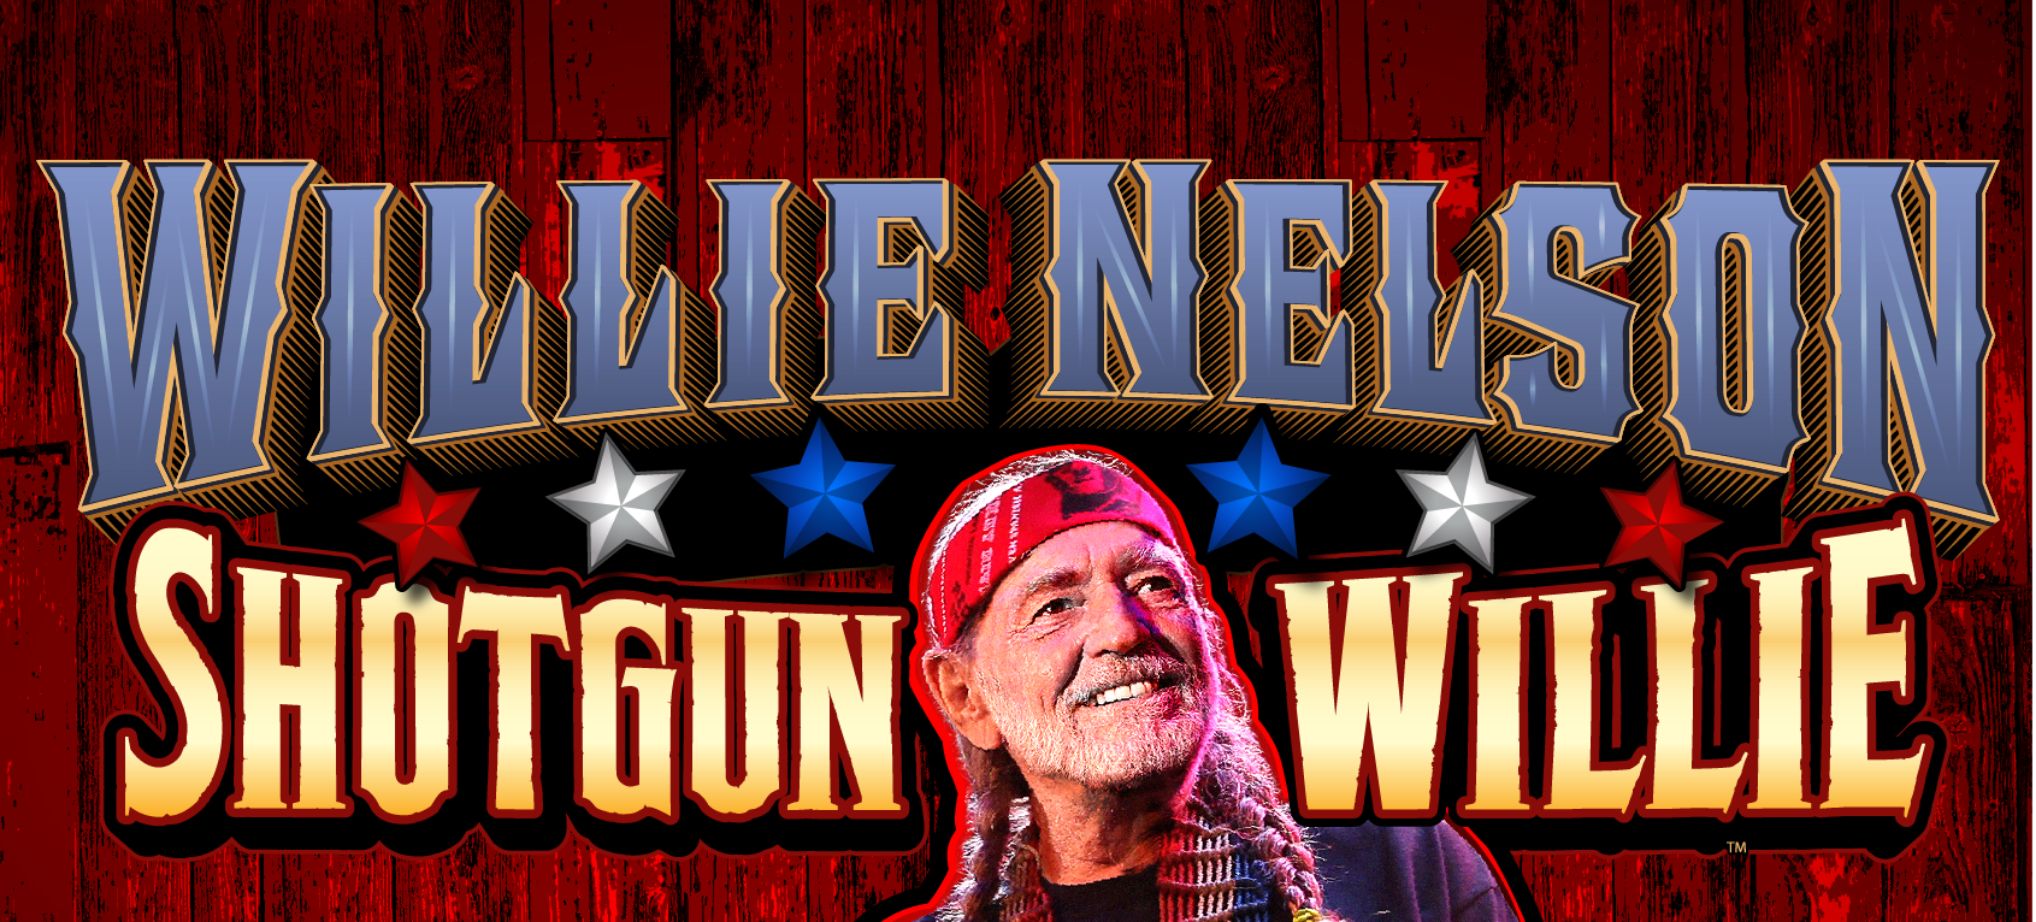 Willie Nelson Shotgun Willie Game